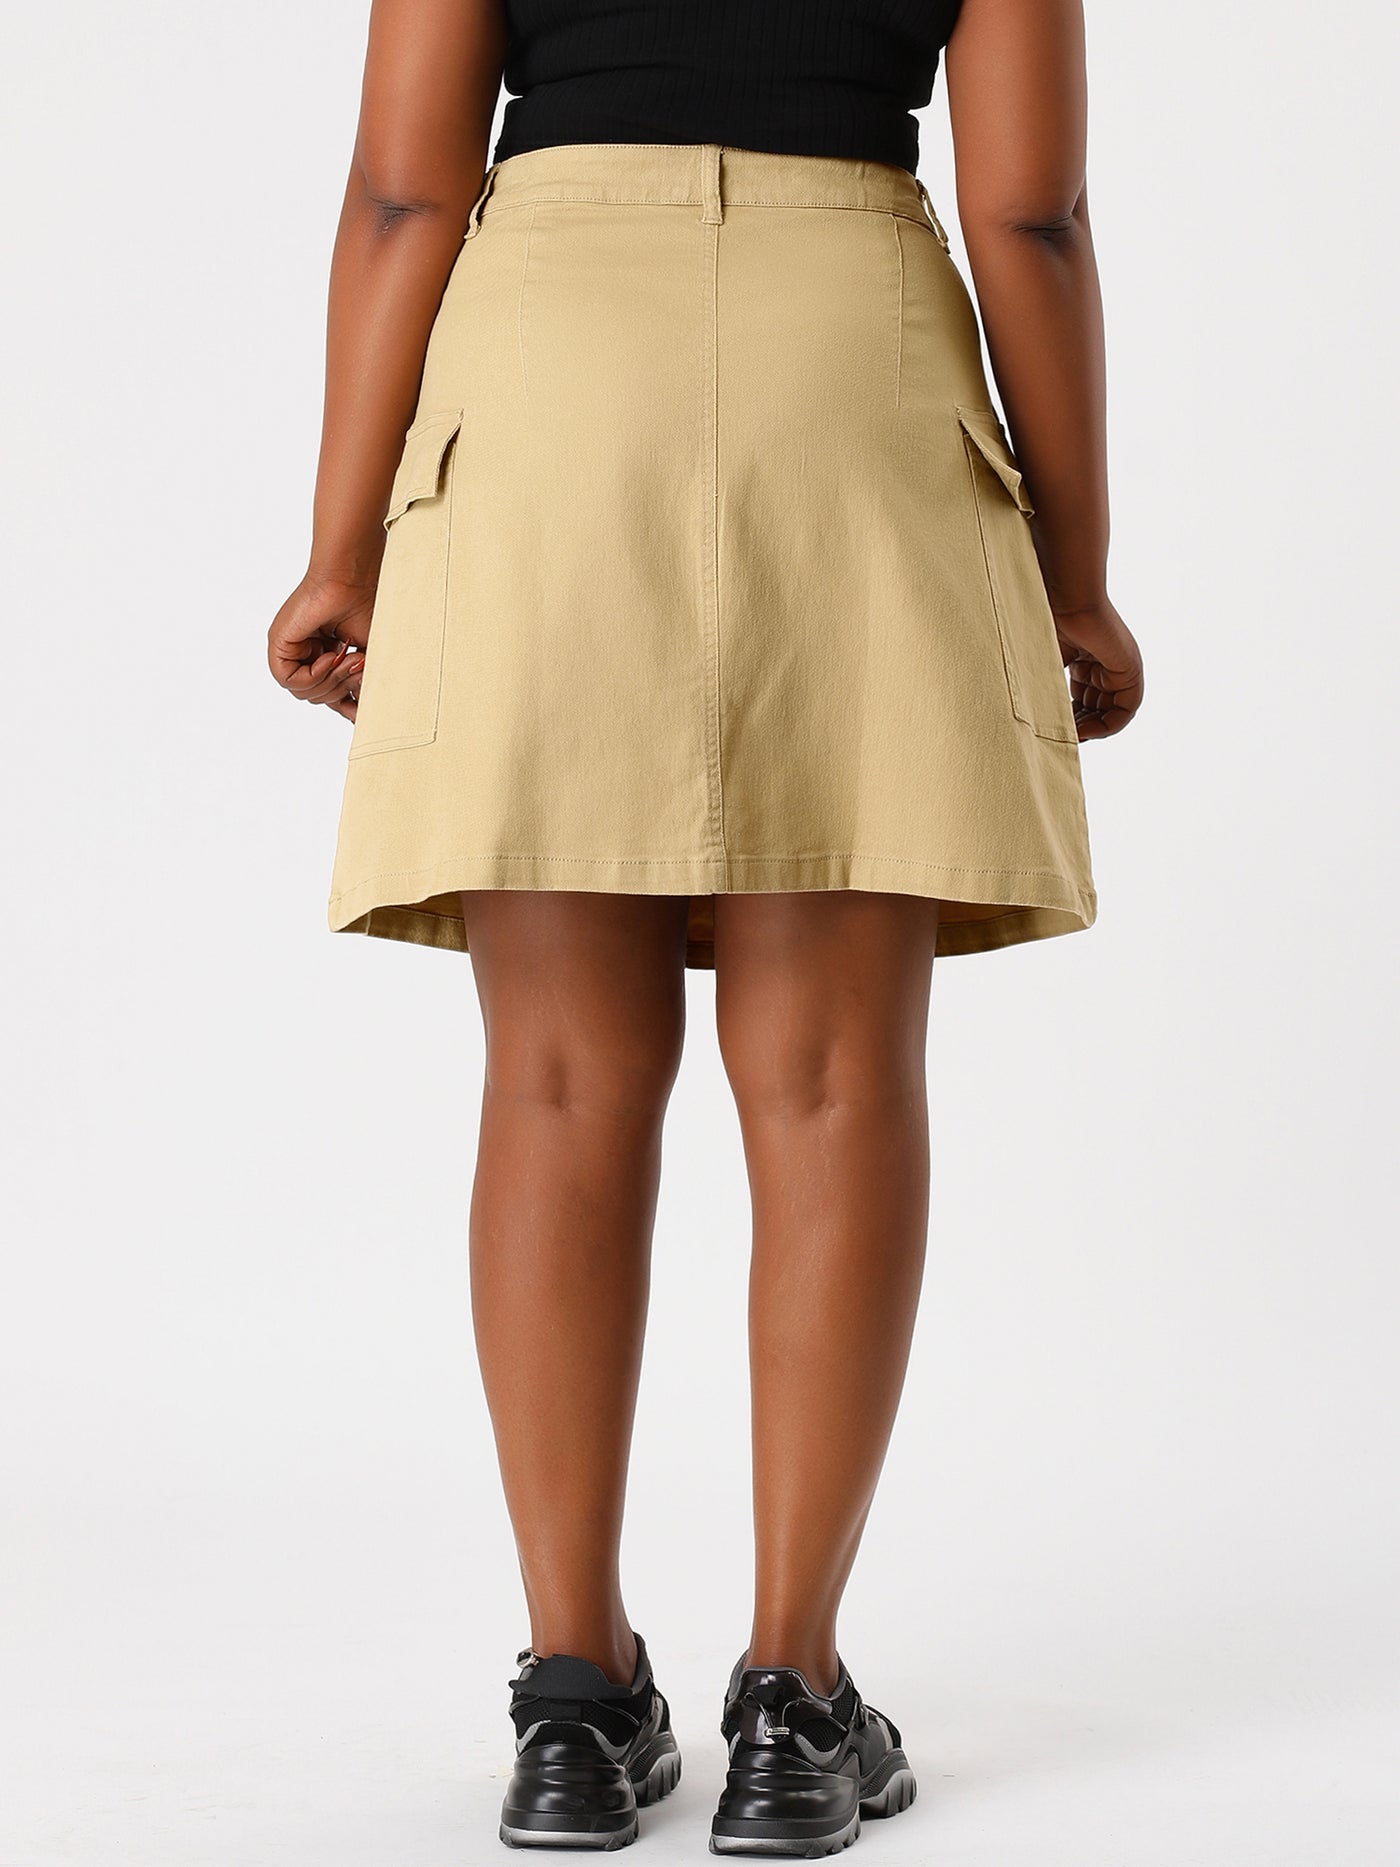 Bublédon Casual Plus Size A Line Plain Above Knee Skirt